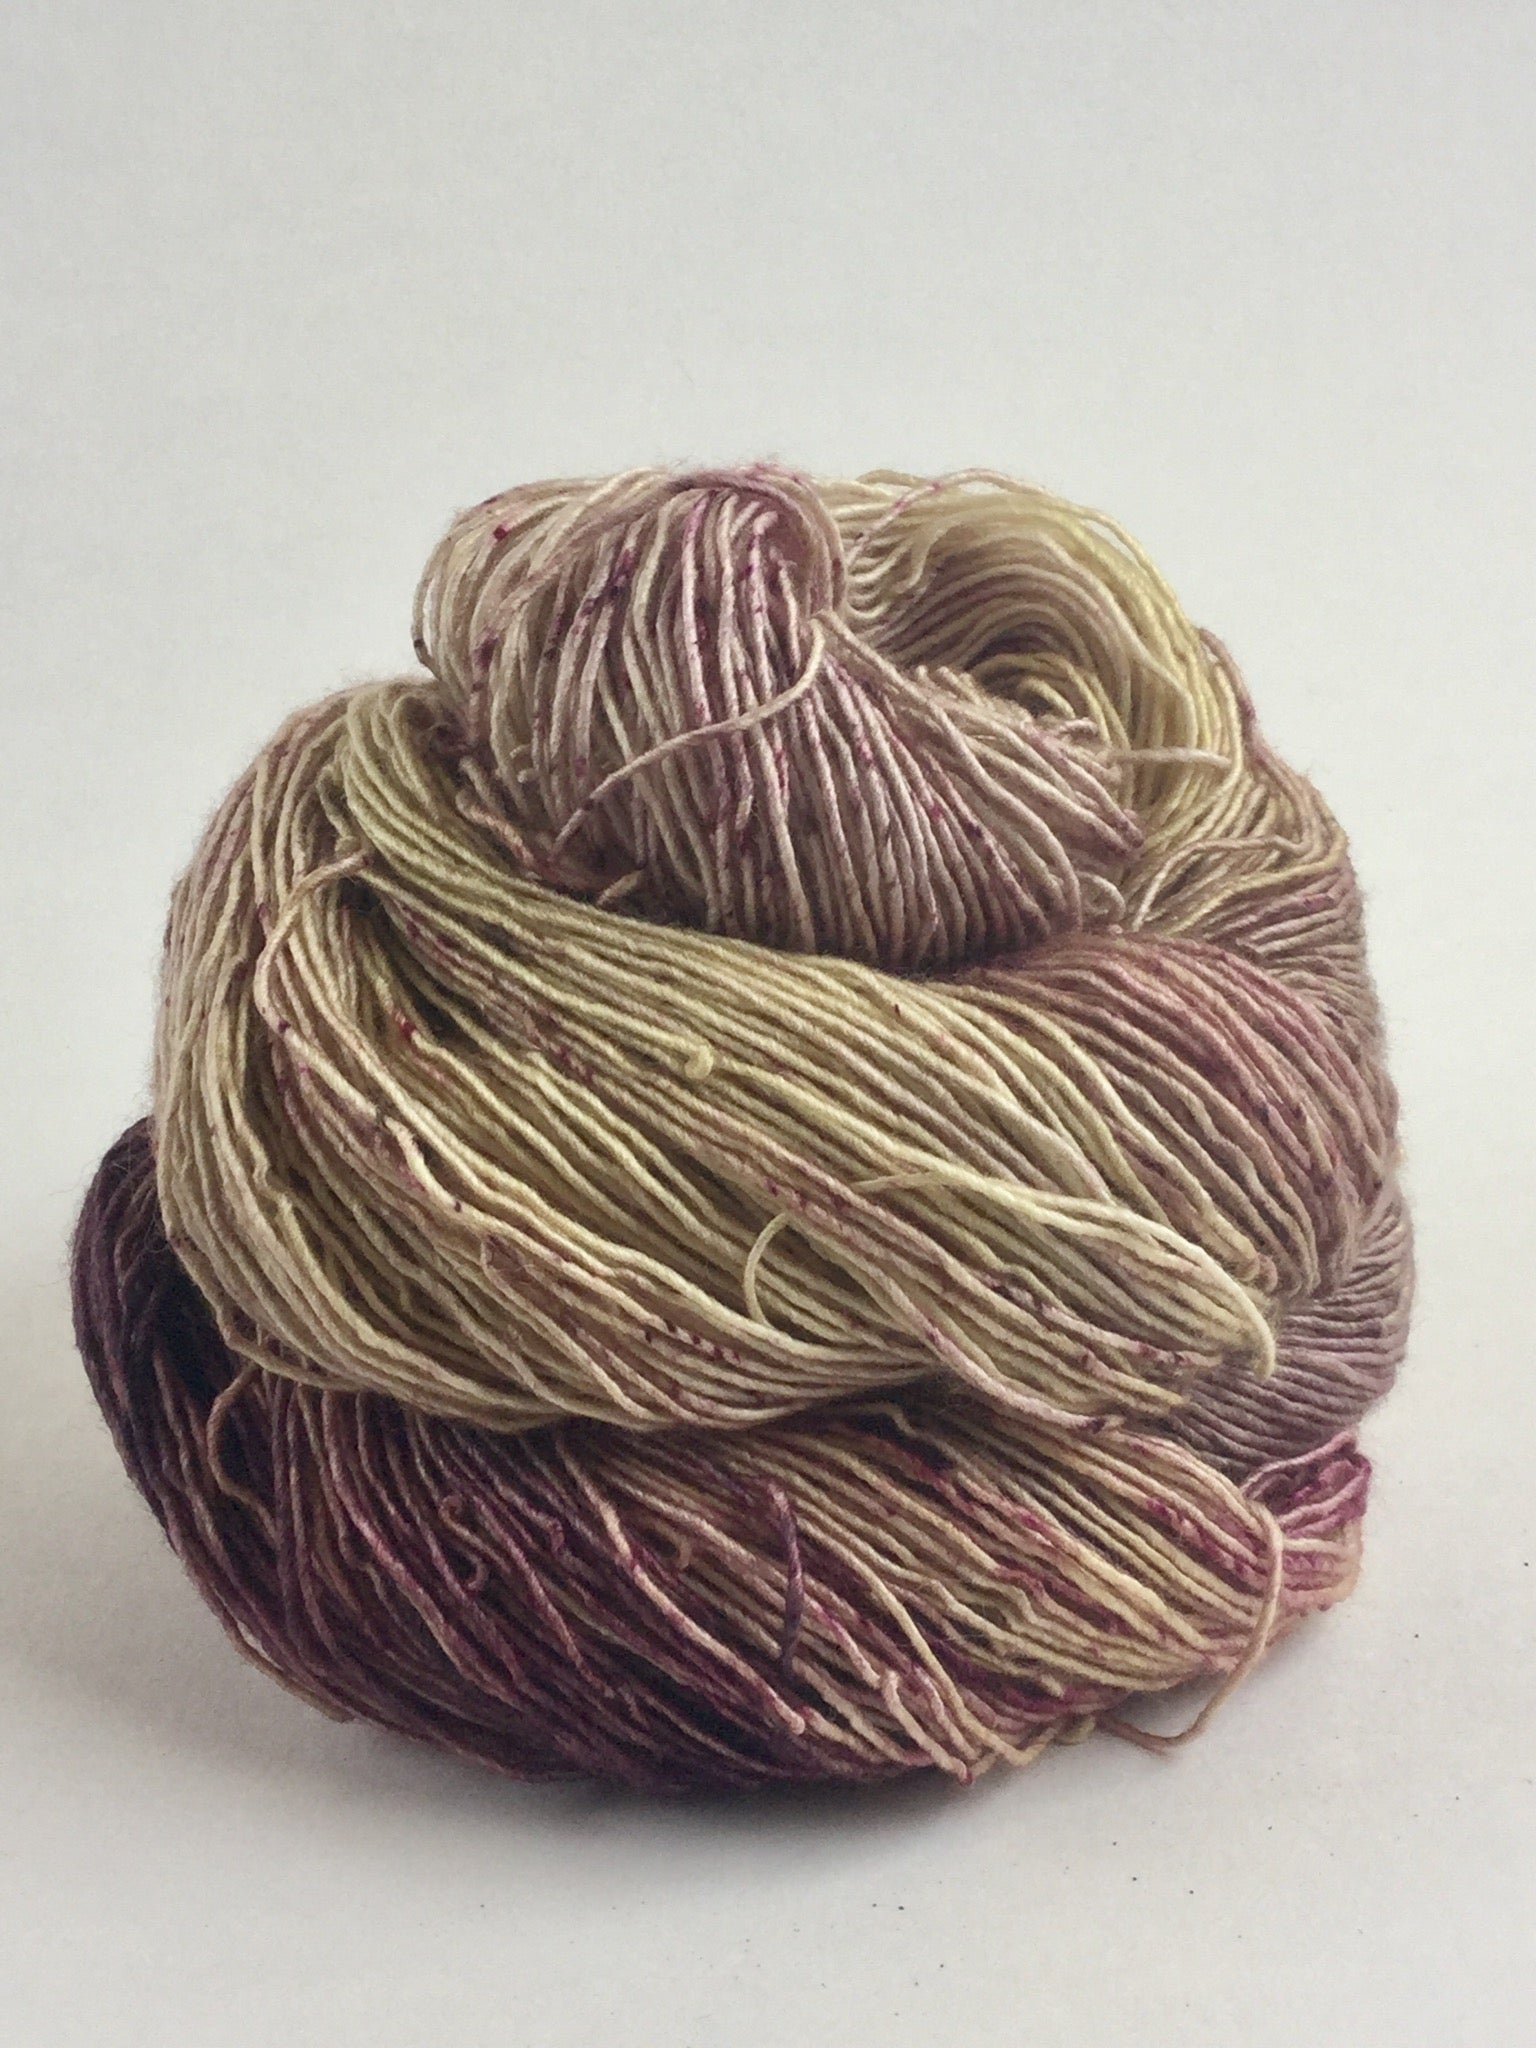 Wren - River Silk and Merino from Tributary Yarns